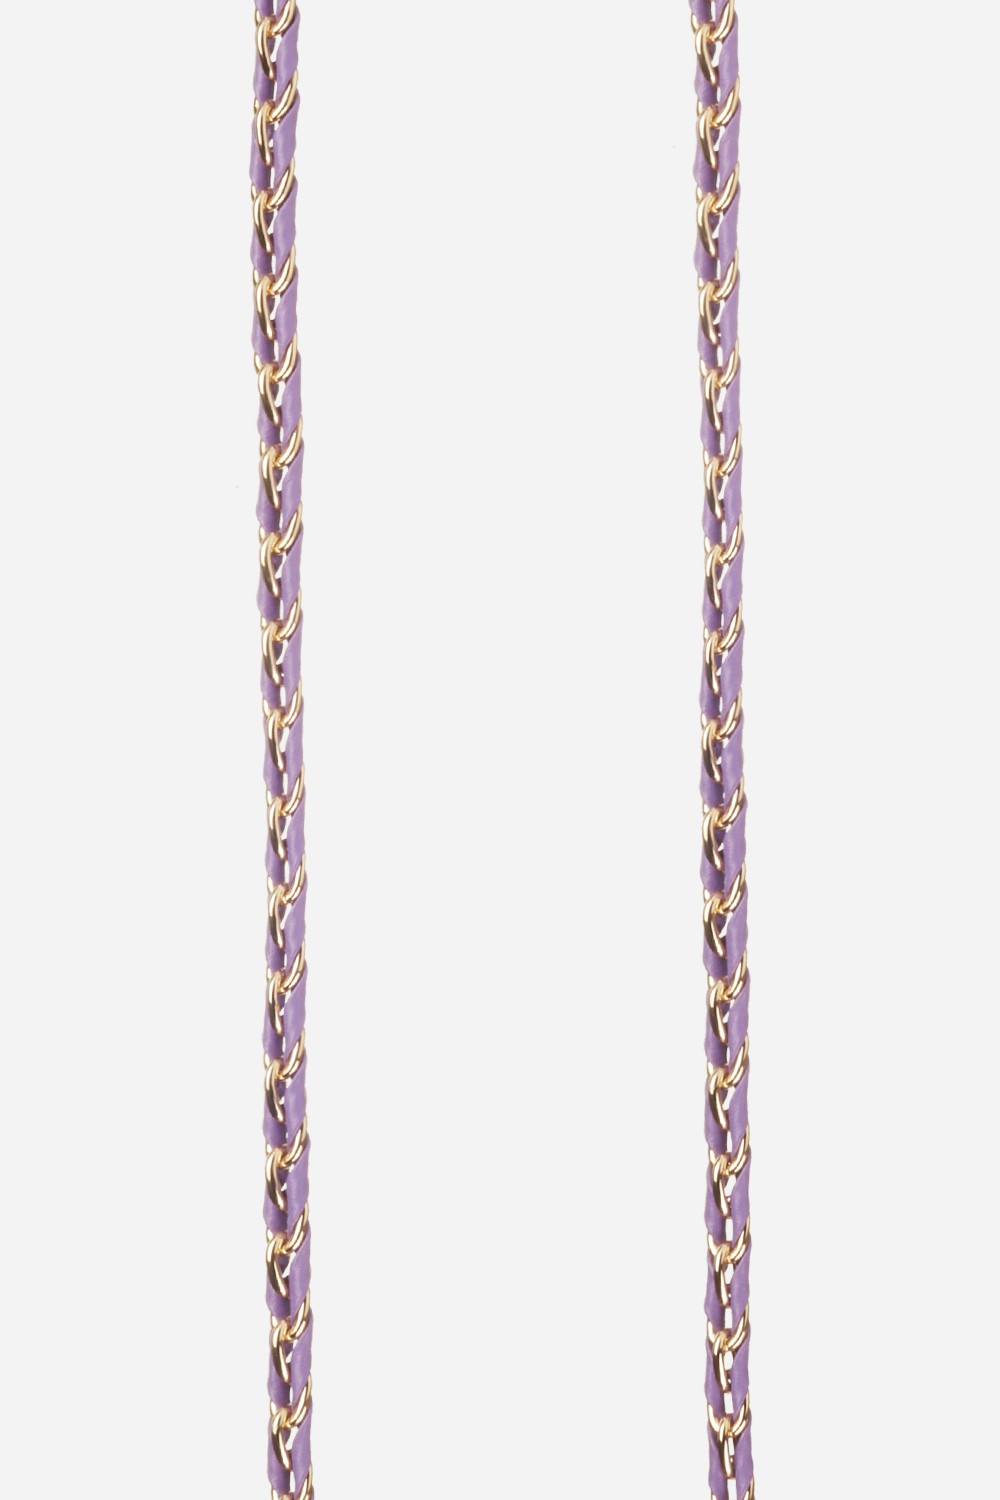 Chaine Longue Lou Violet 120 cm